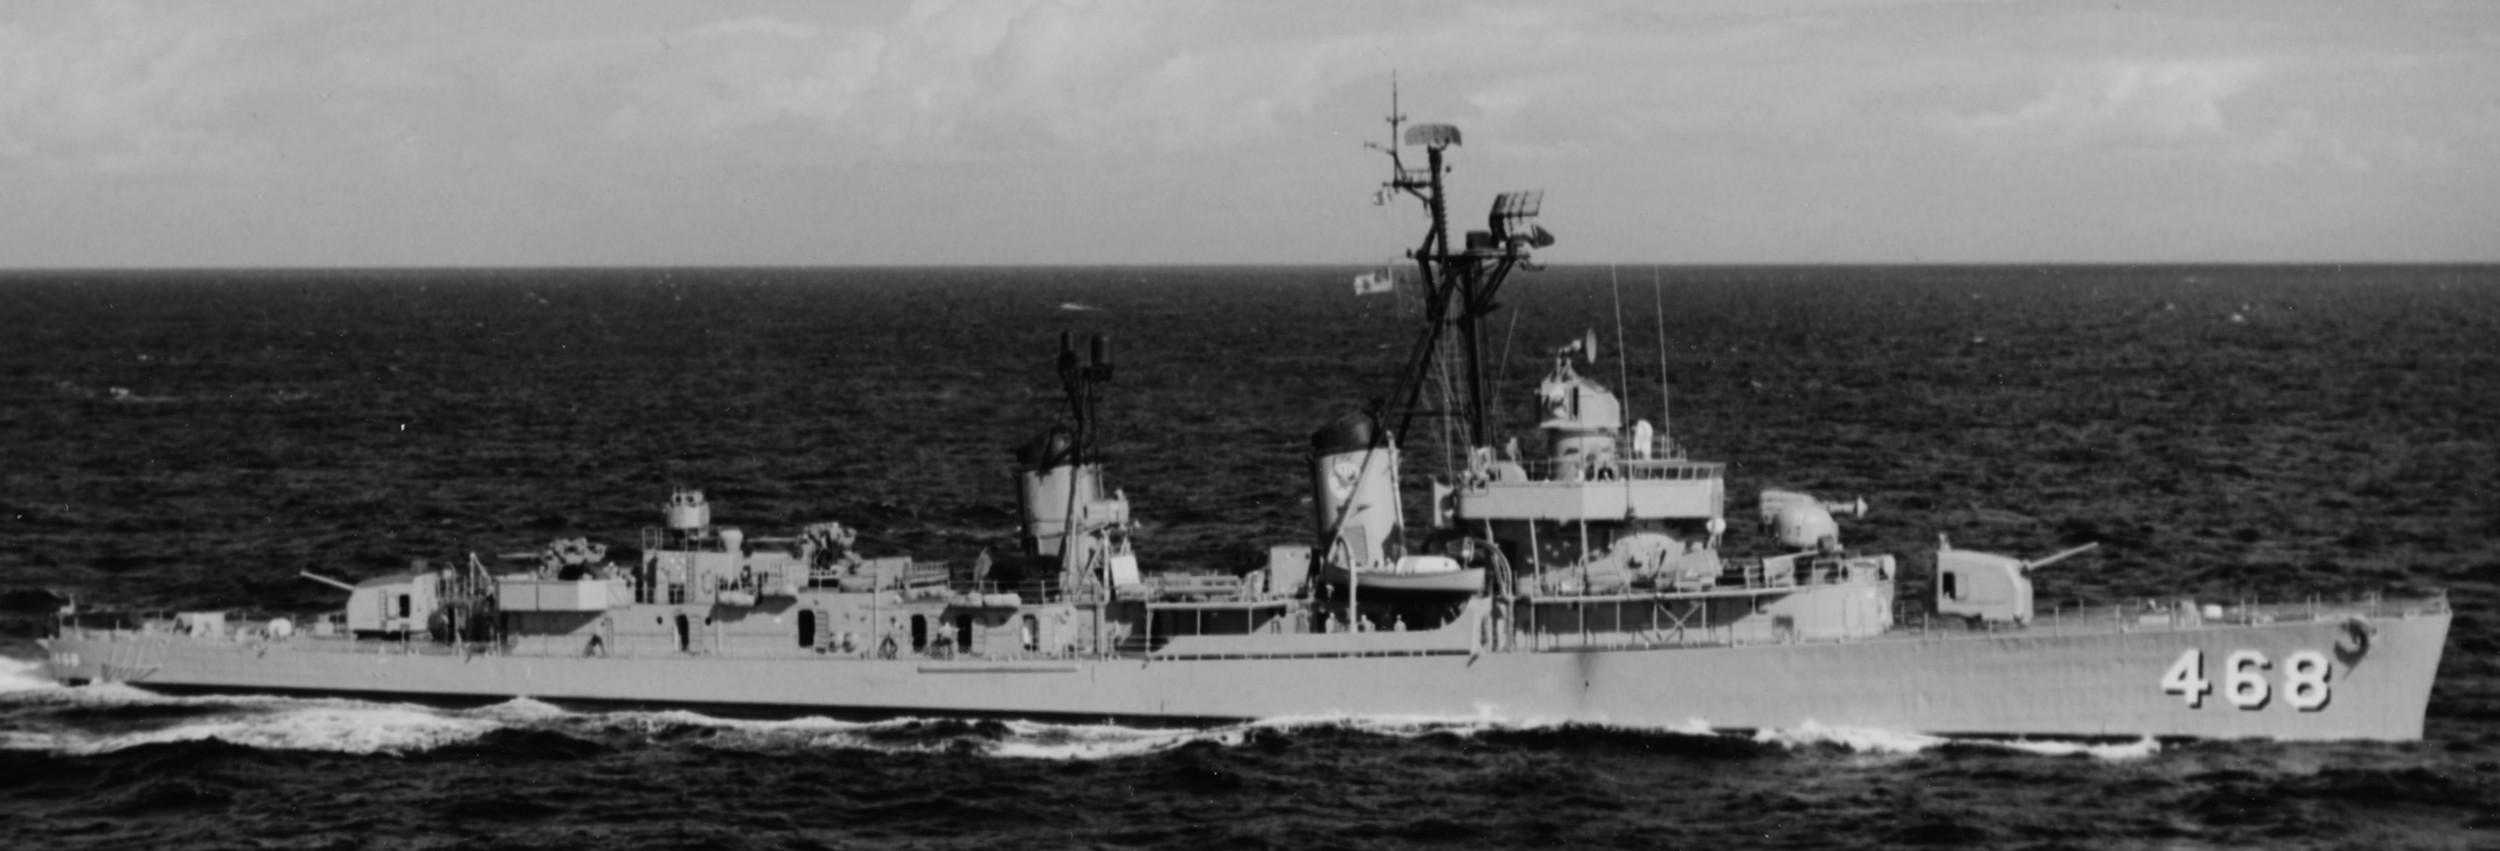 dd-468 uss taylor d-560 its lanciere fante fletcher class destroyer 03